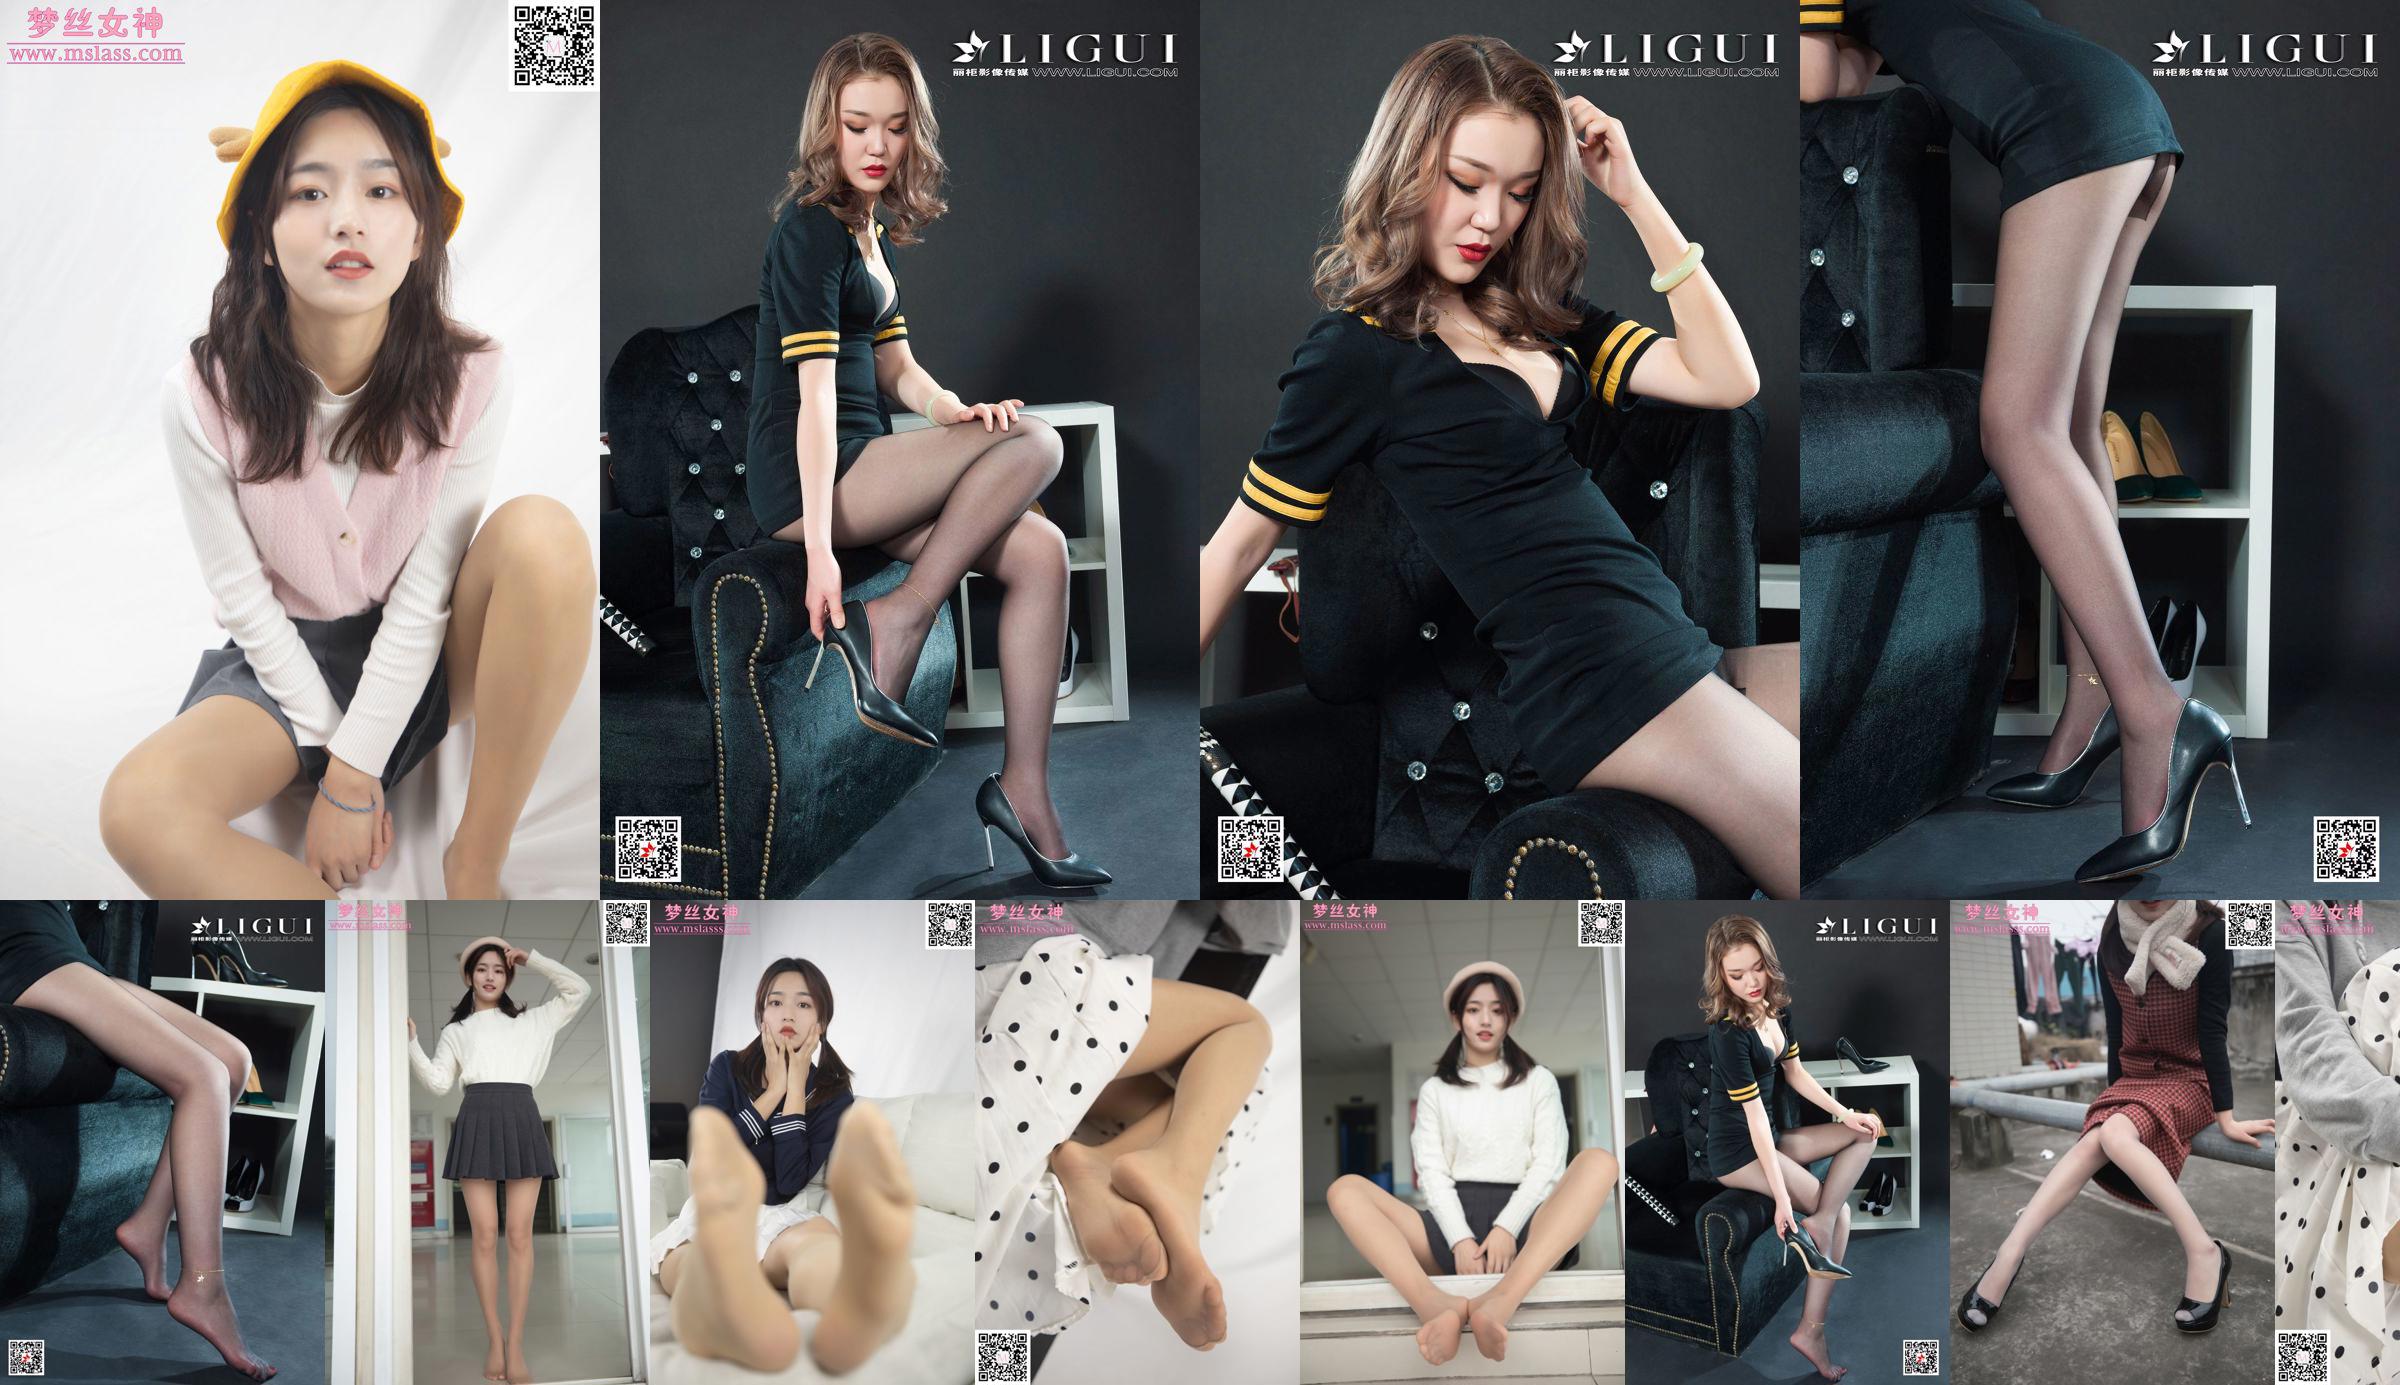 Xuanxuan Leg Người mẫu "Đồng phục tiếp viên lụa đen" [Ligui Ligui] Internet Beauty No.297ccf Trang 13